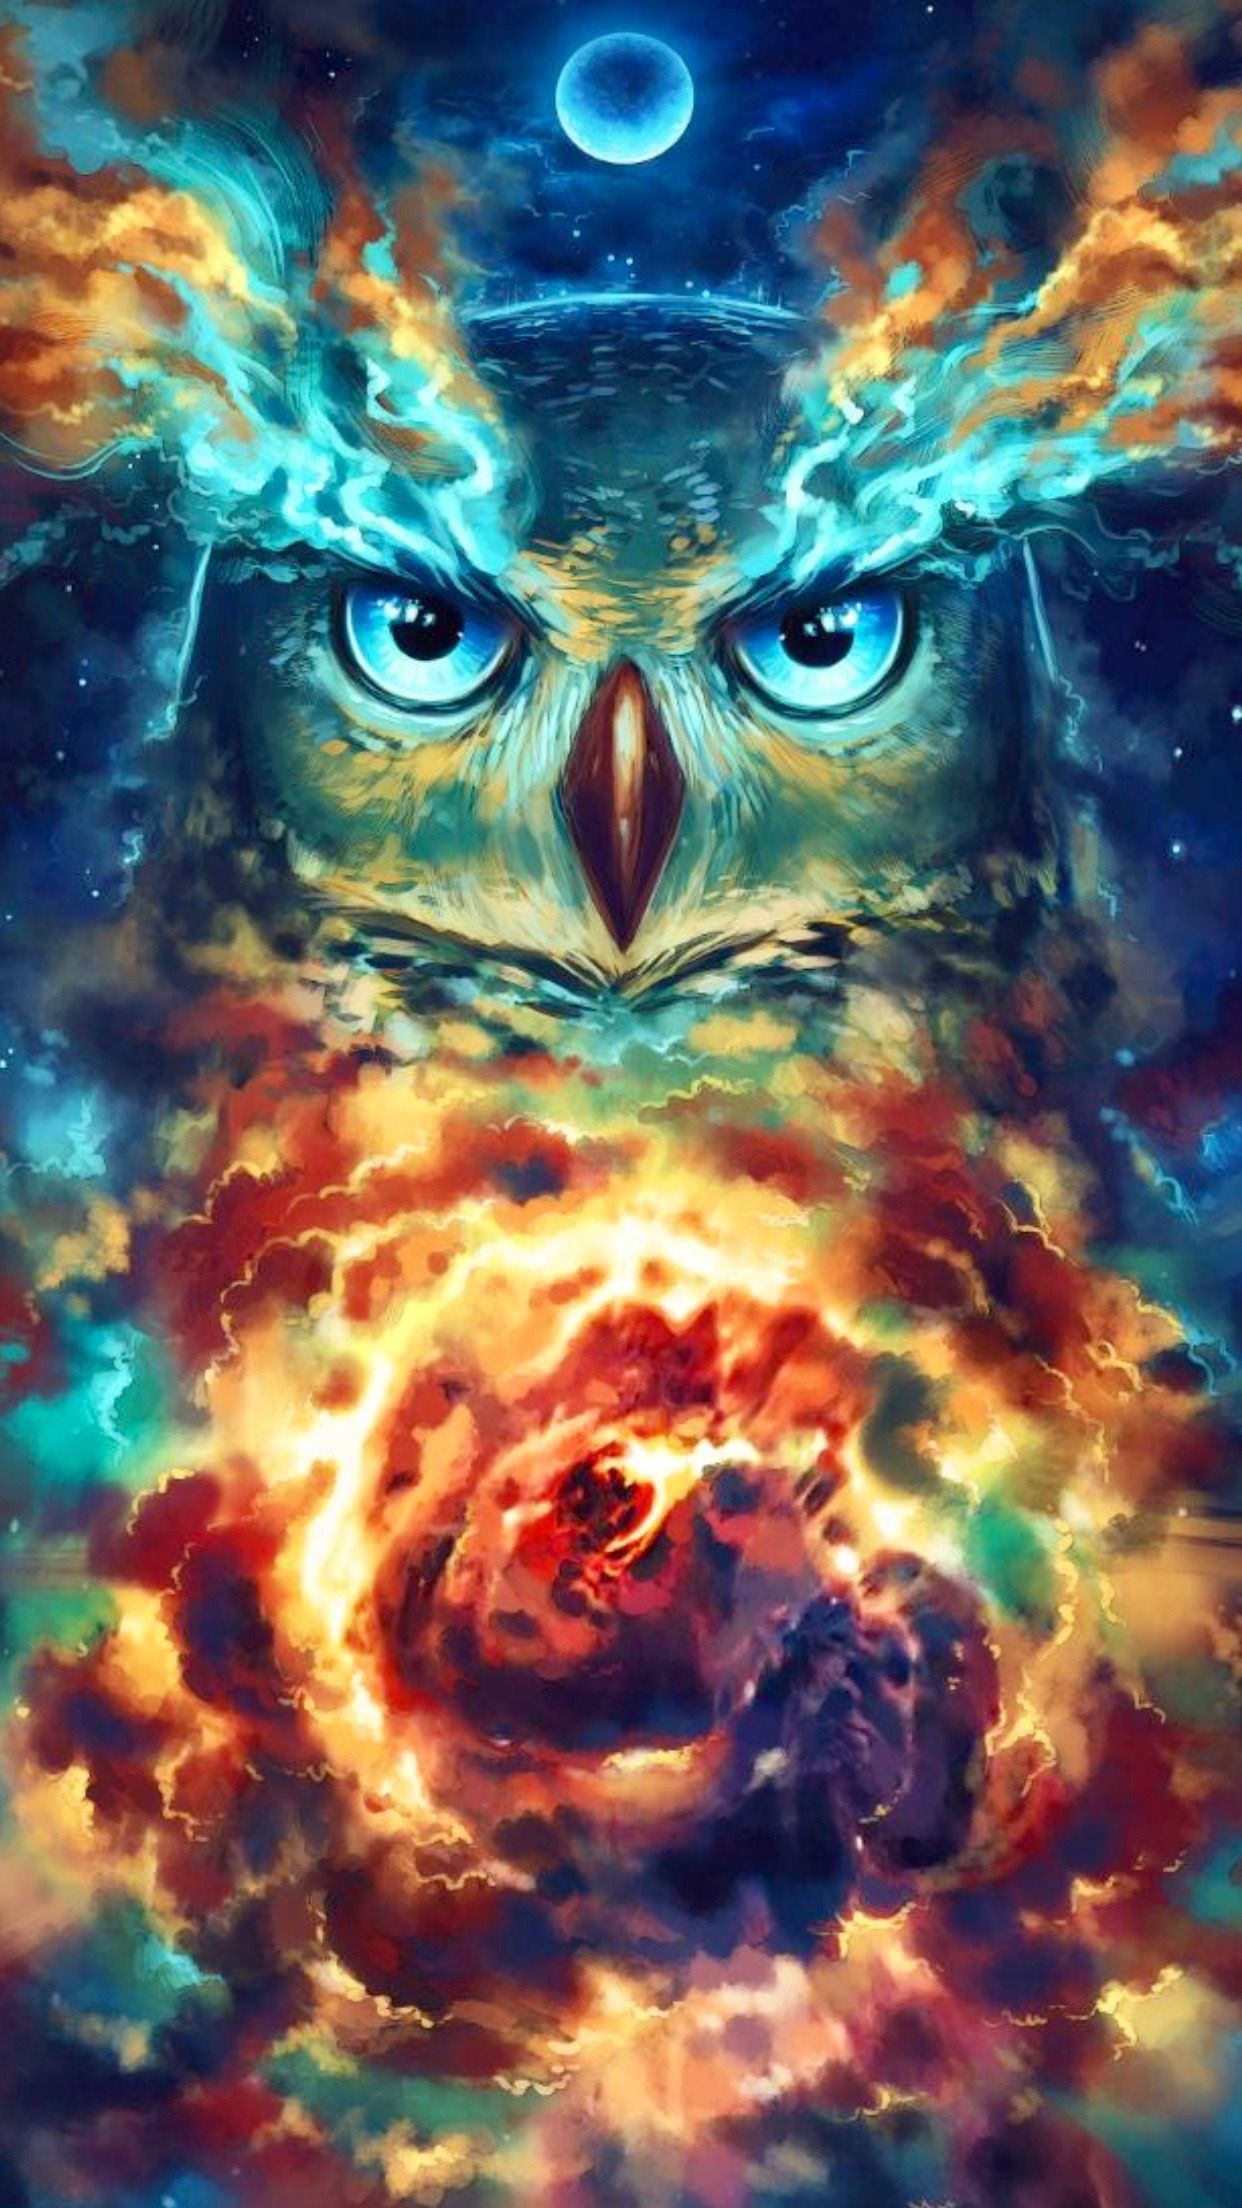 Owl artwork. Owl artwork, Owl artwork illustrations, Owl art